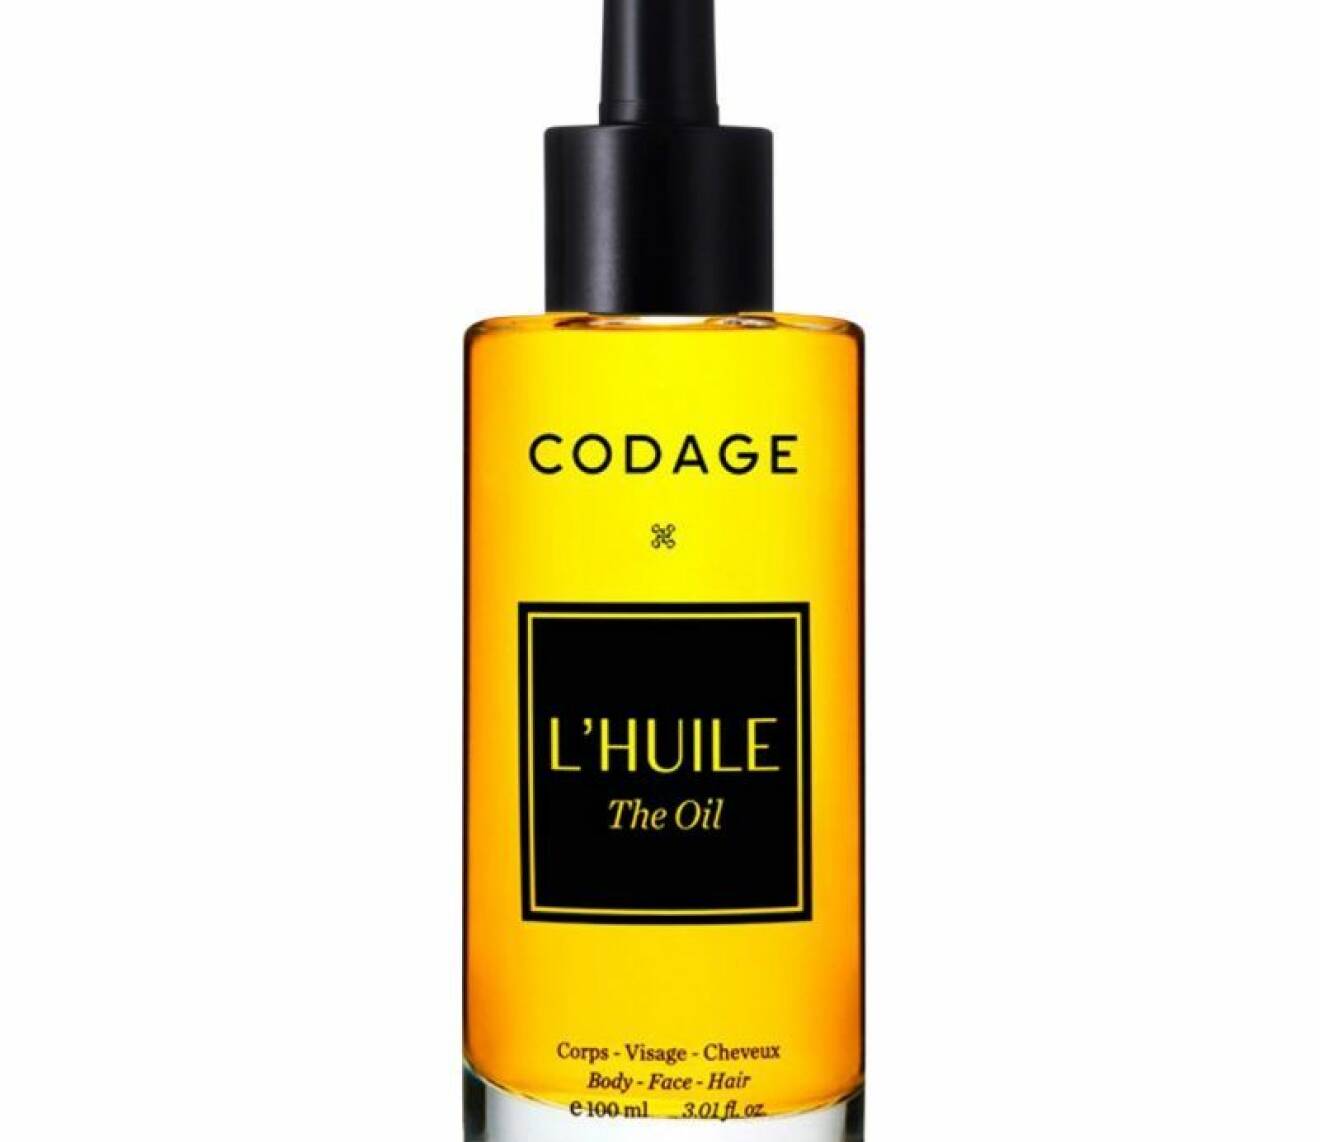 L'huile från Codage